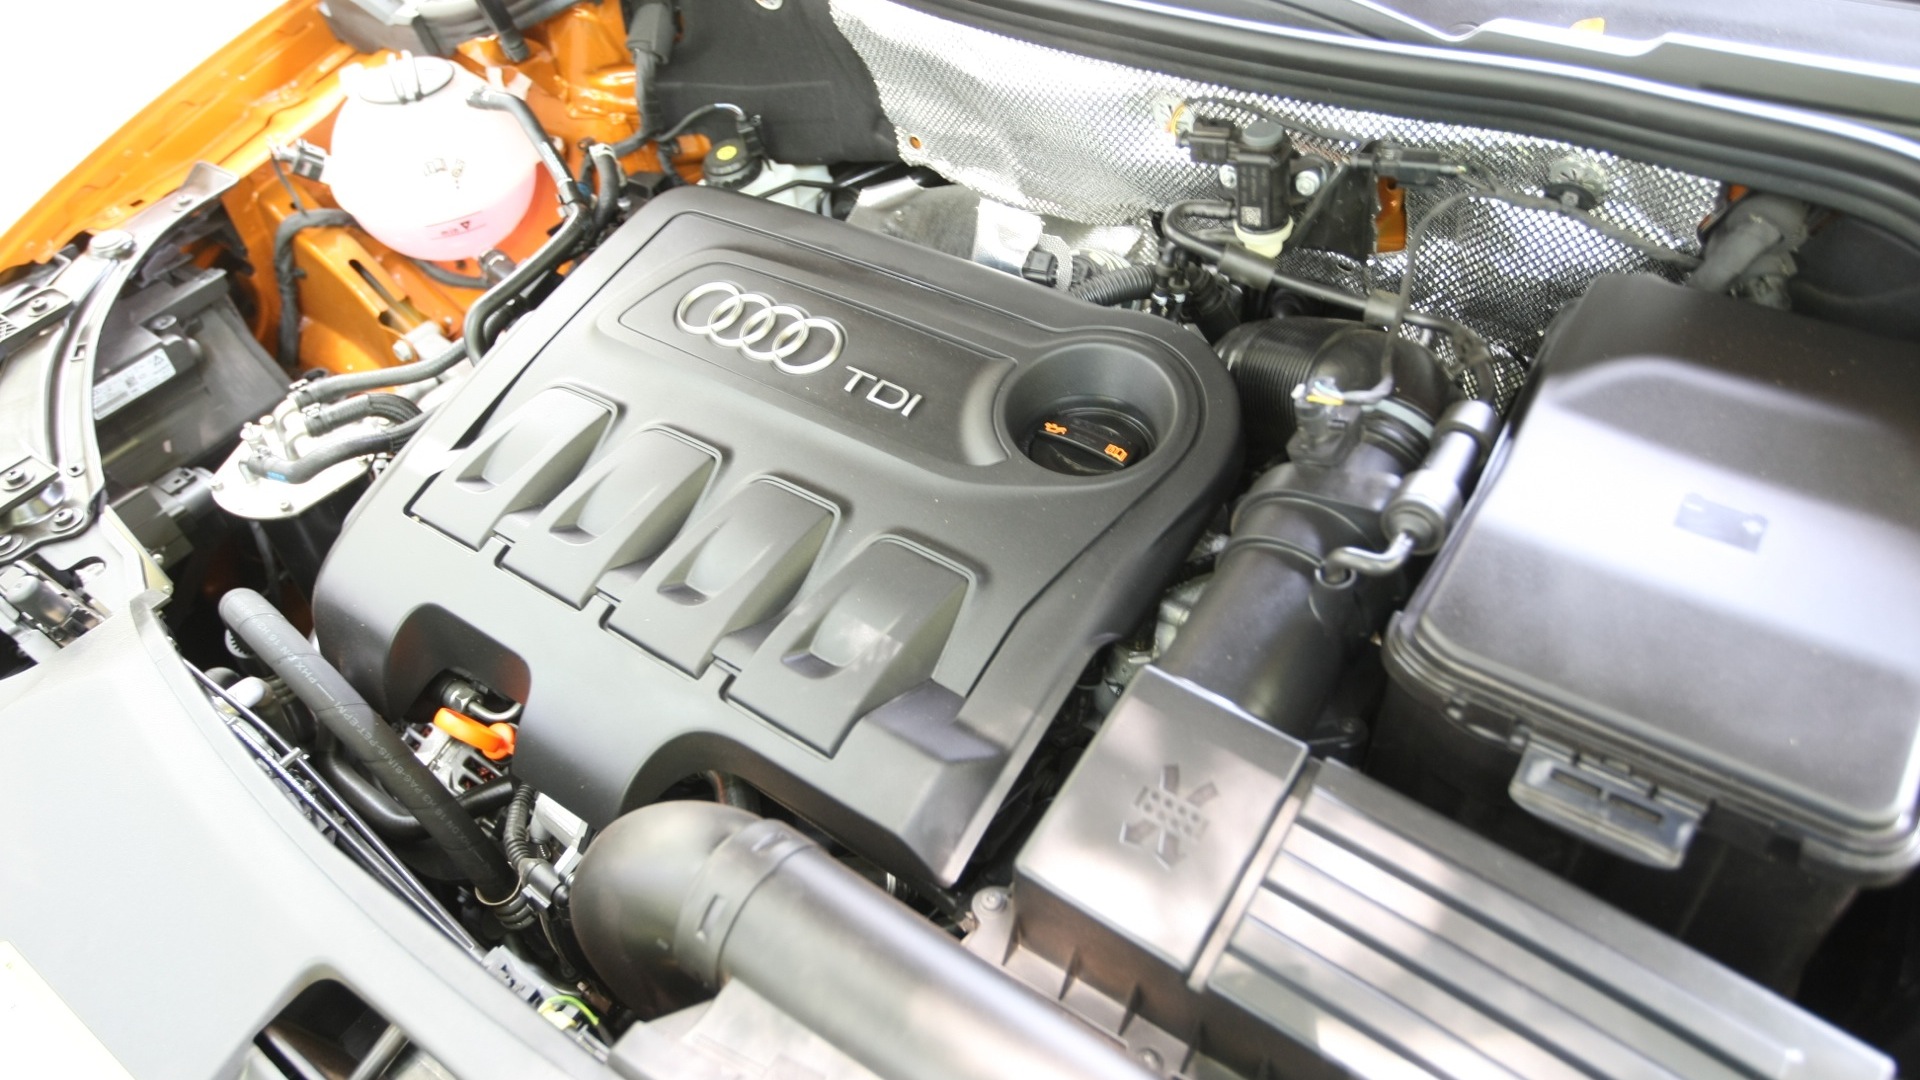 Audi-Q3-2012-2-0-TFSI-Quattro-Interior